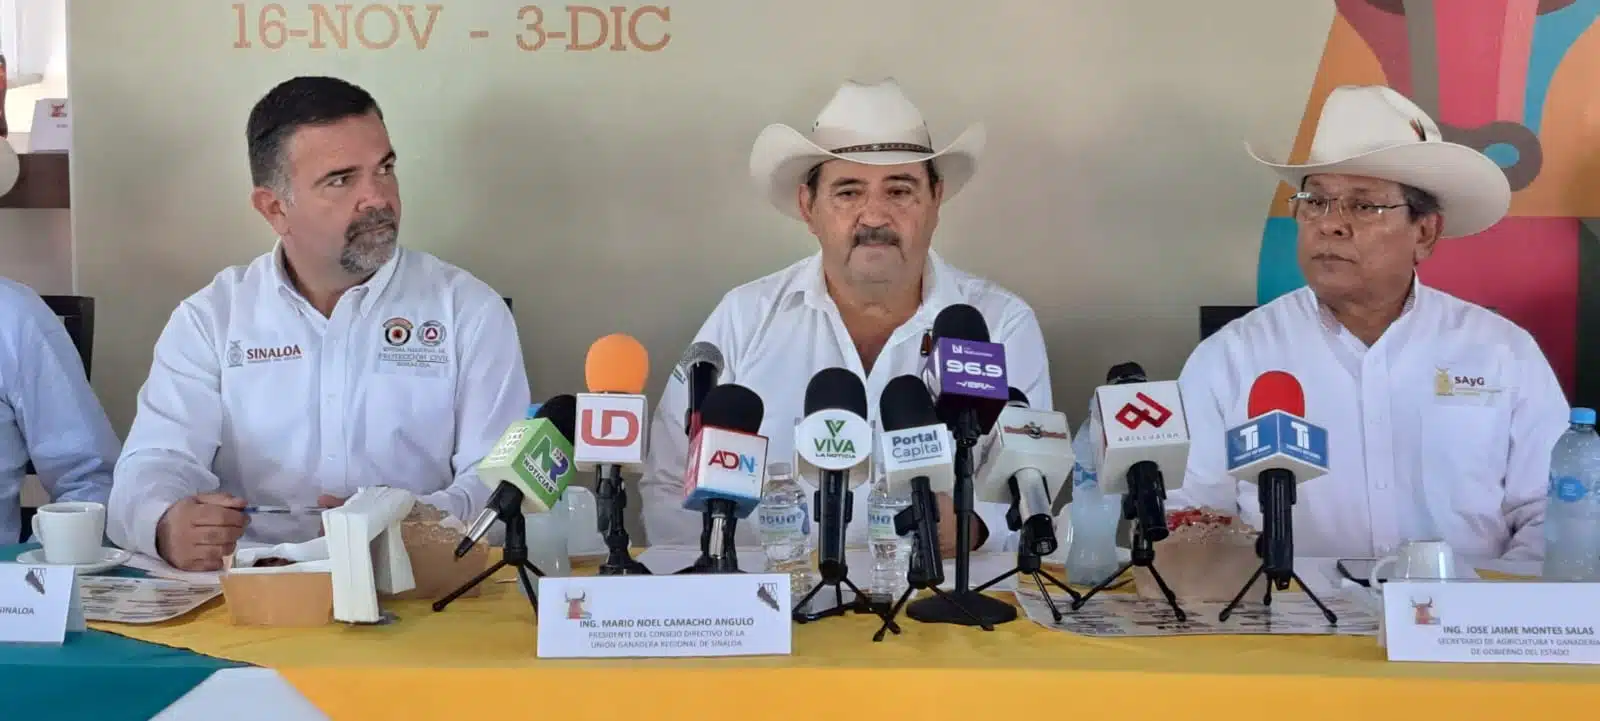 Unión Ganadera Regional de Sinaloa (UGRS) en envento